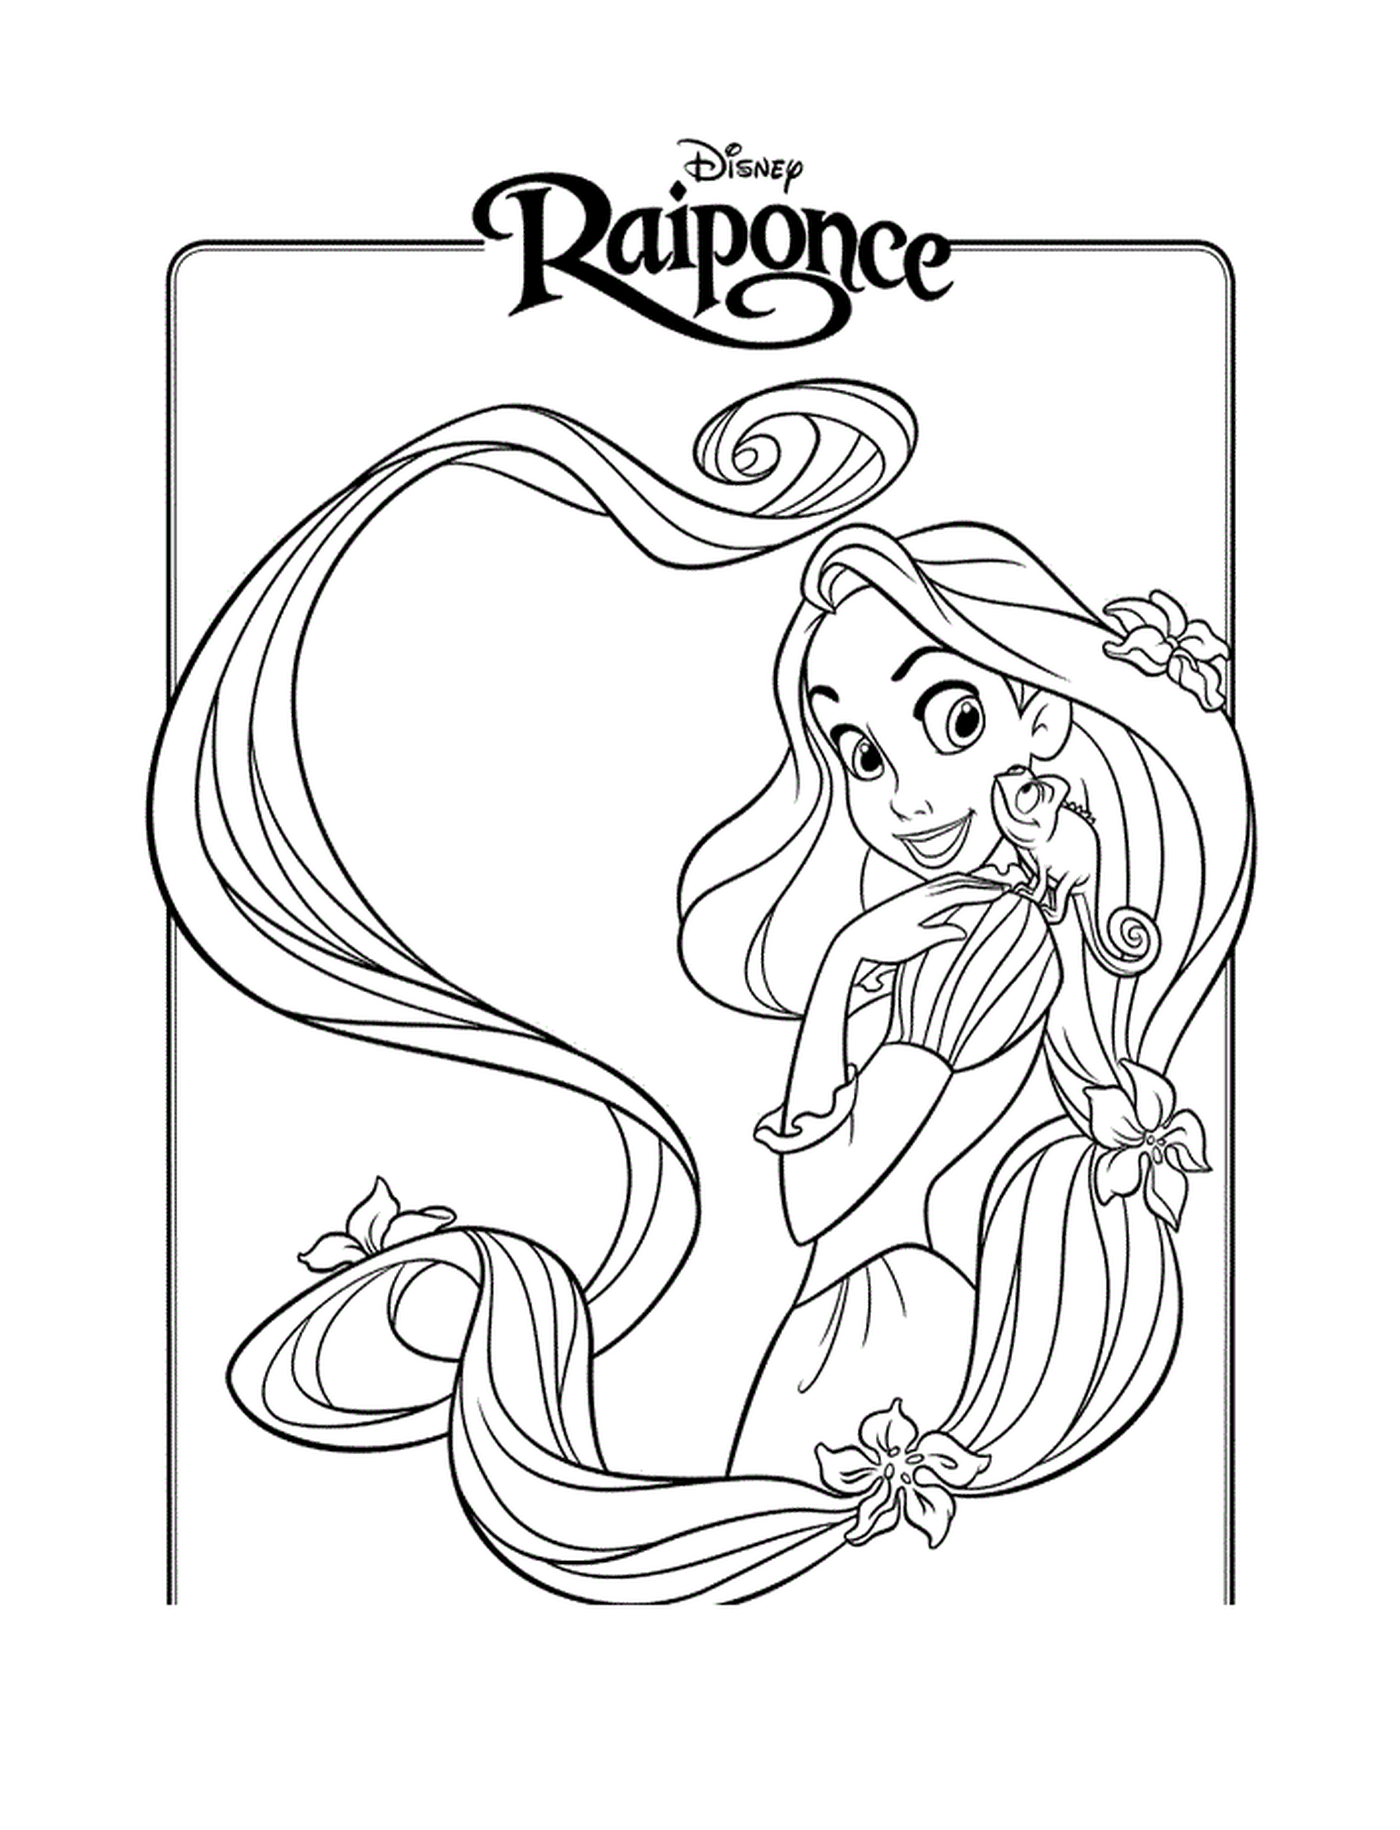  Raiponce Disney, ein junges Mädchen mit langen Haaren 